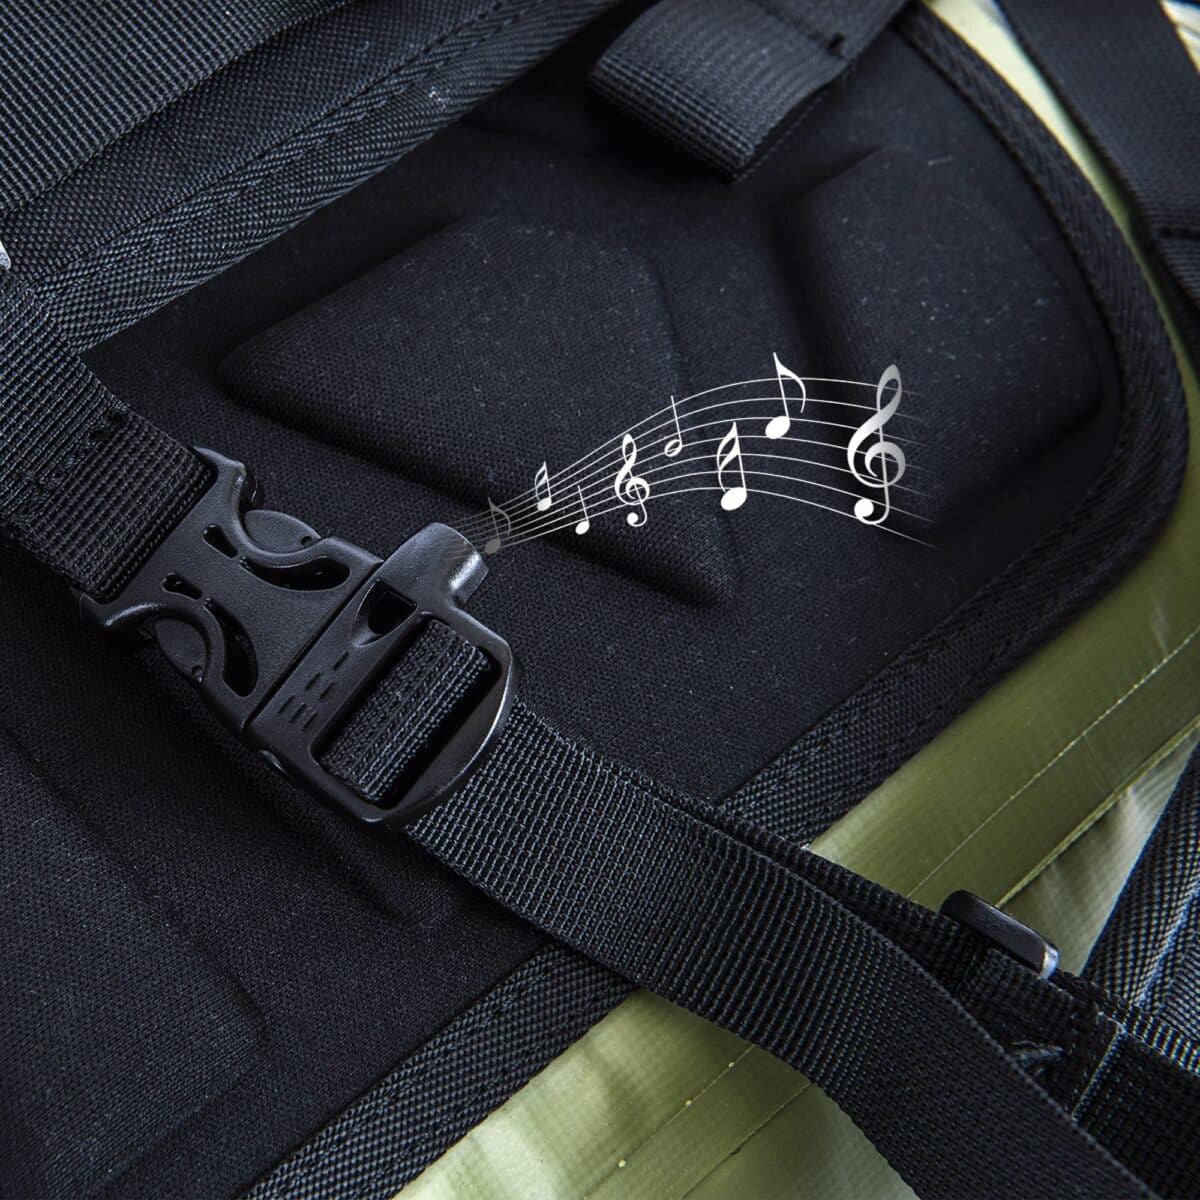 40L waterproof backpack whistle